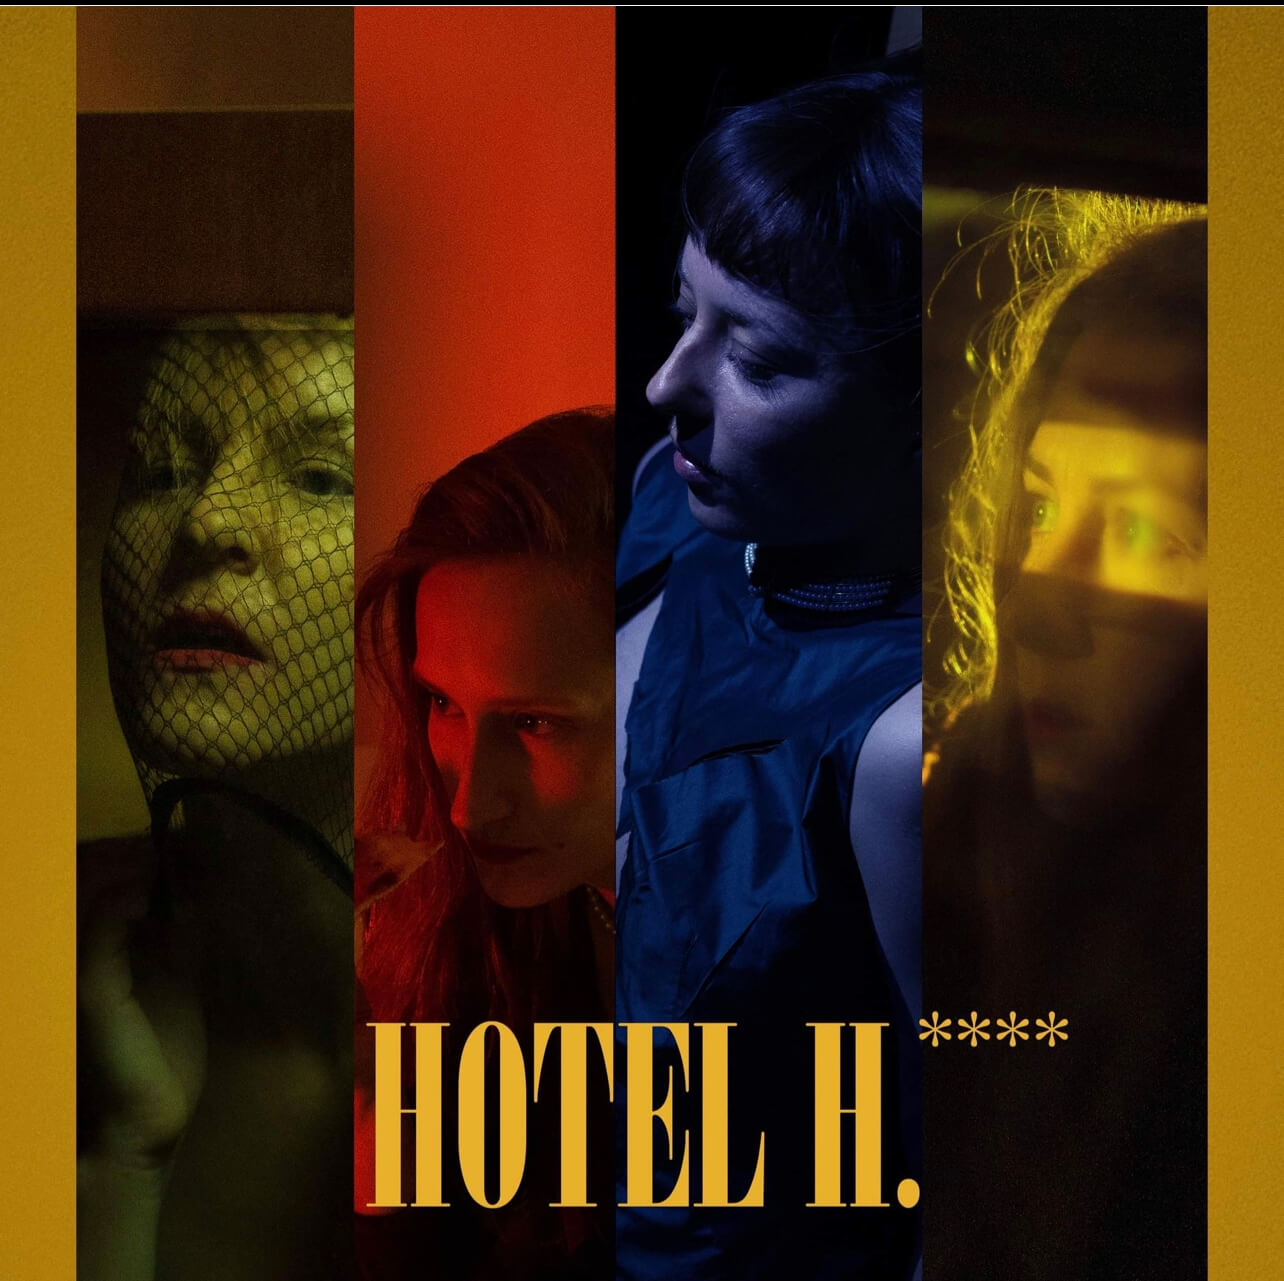 Premiera “Hotel H.****”